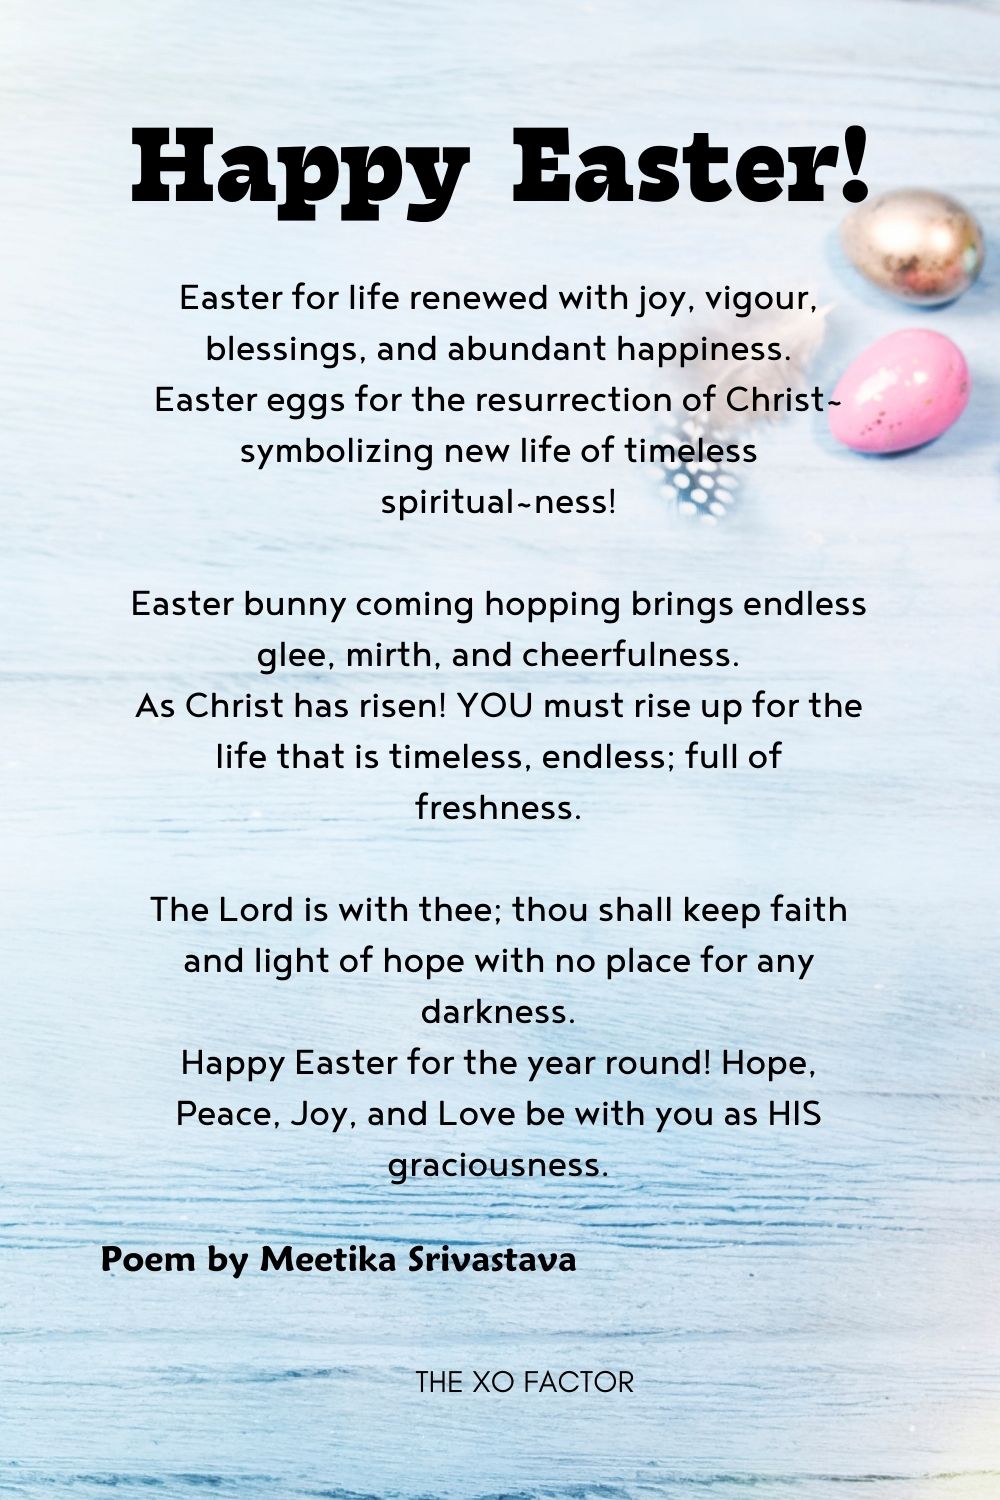 Happy Easter! Poem by Meetika Srivastava